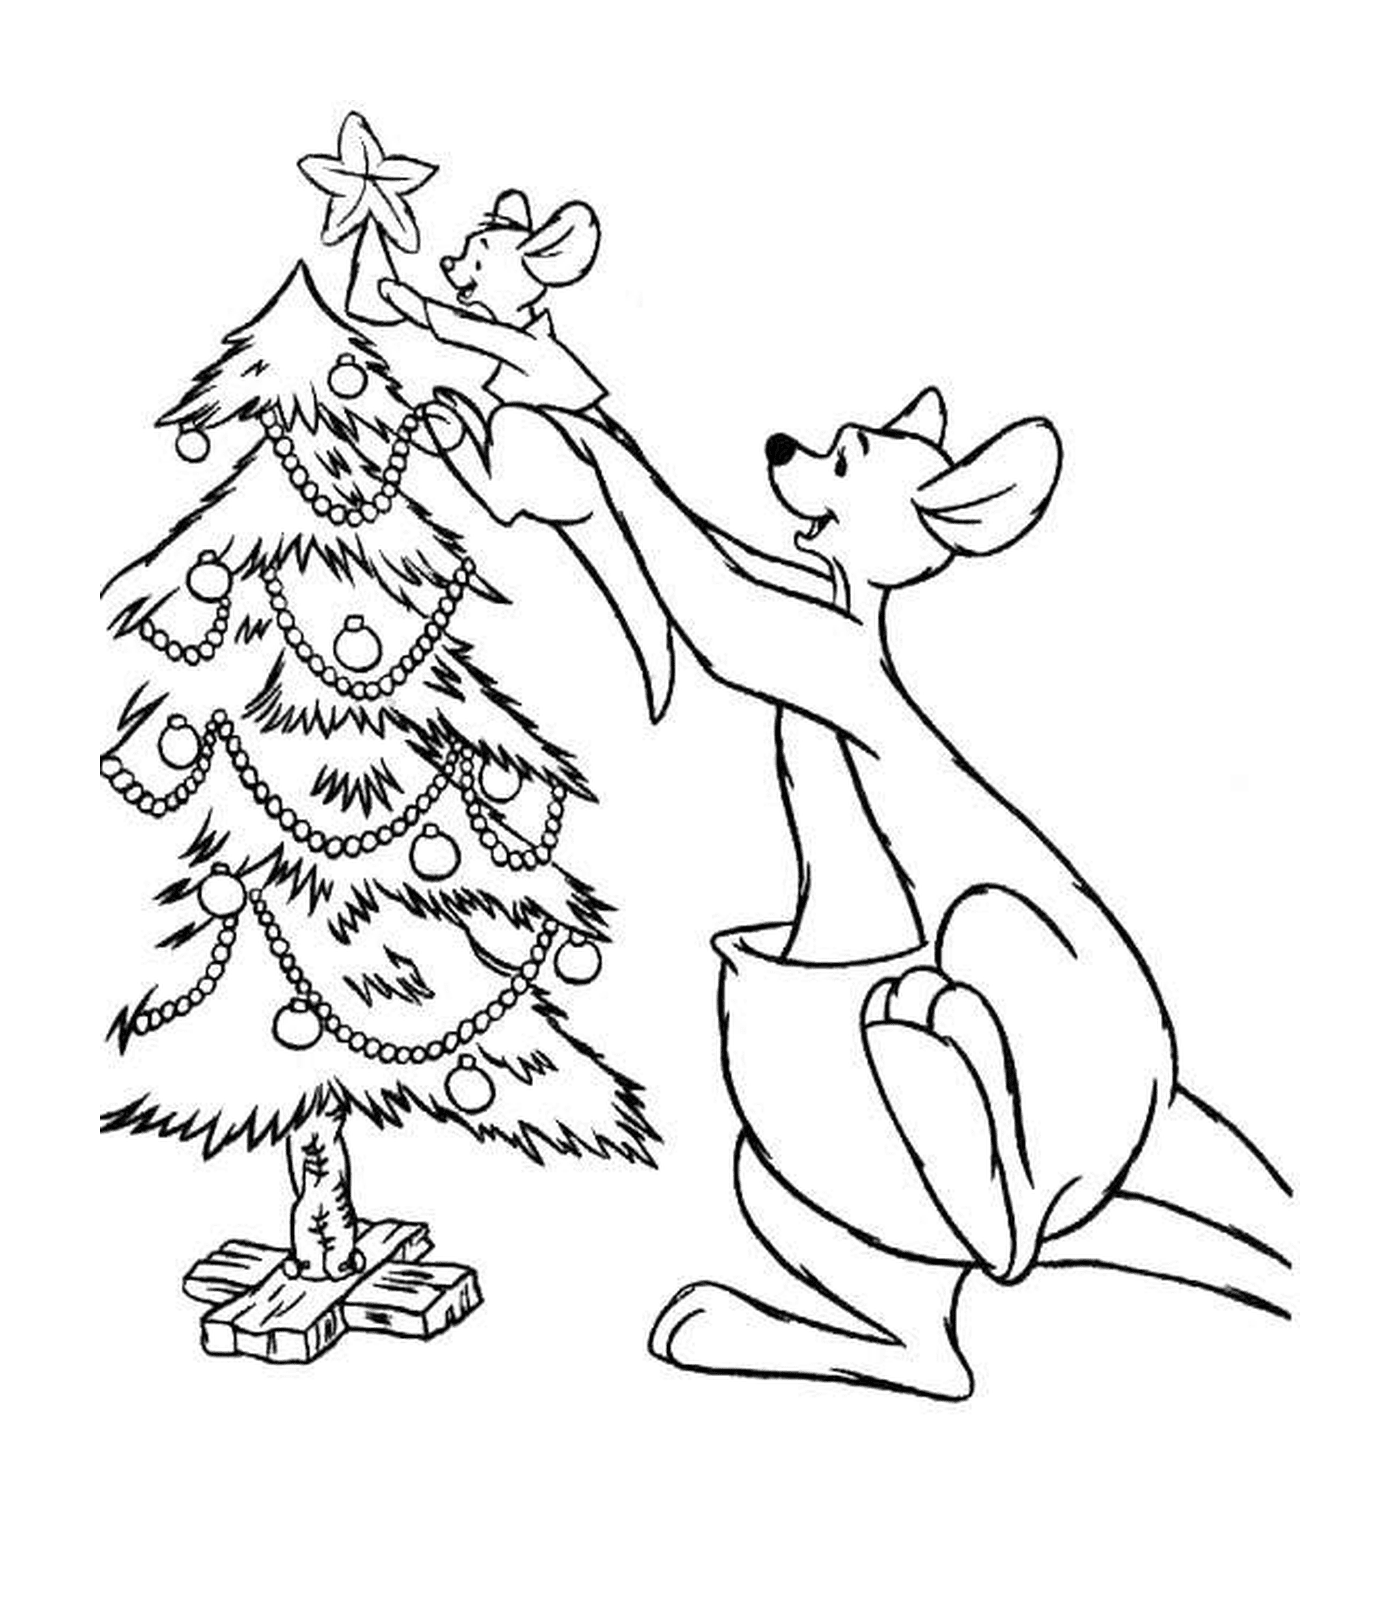  कुत्ता जो क्रिसमस के पेड़ का पालन करता है 